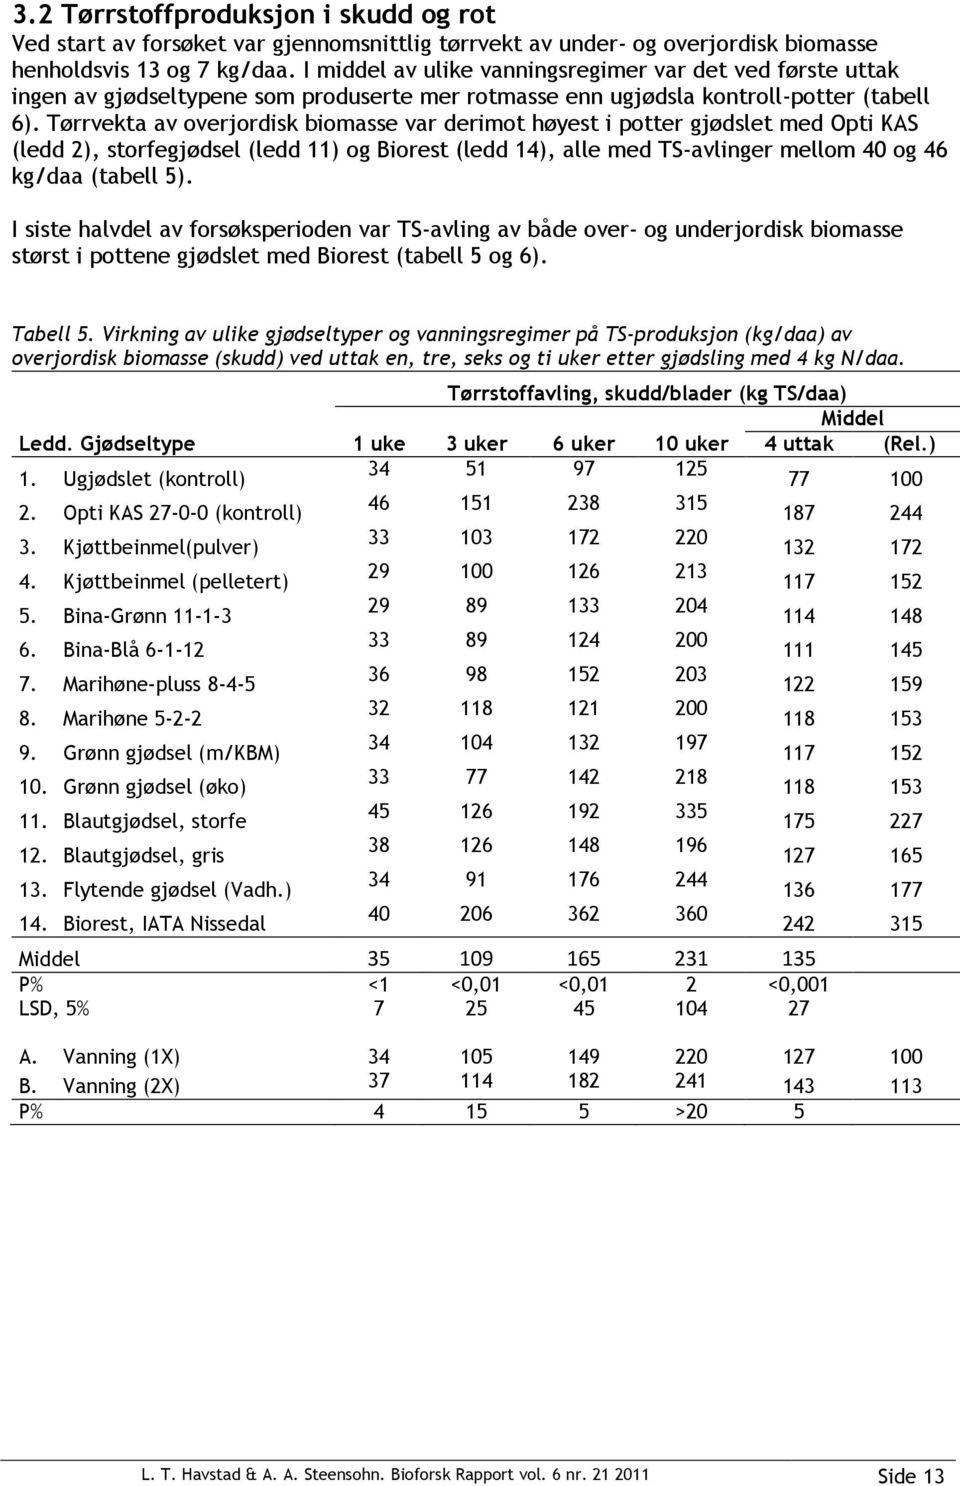 Tørrvekta av overjordisk biomasse var derimot høyest i potter gjødslet med Opti KAS (ledd 2), storfegjødsel (ledd 11) og Biorest (ledd 14), alle med TS-avlinger mellom 40 og 46 kg/daa (tabell 5).